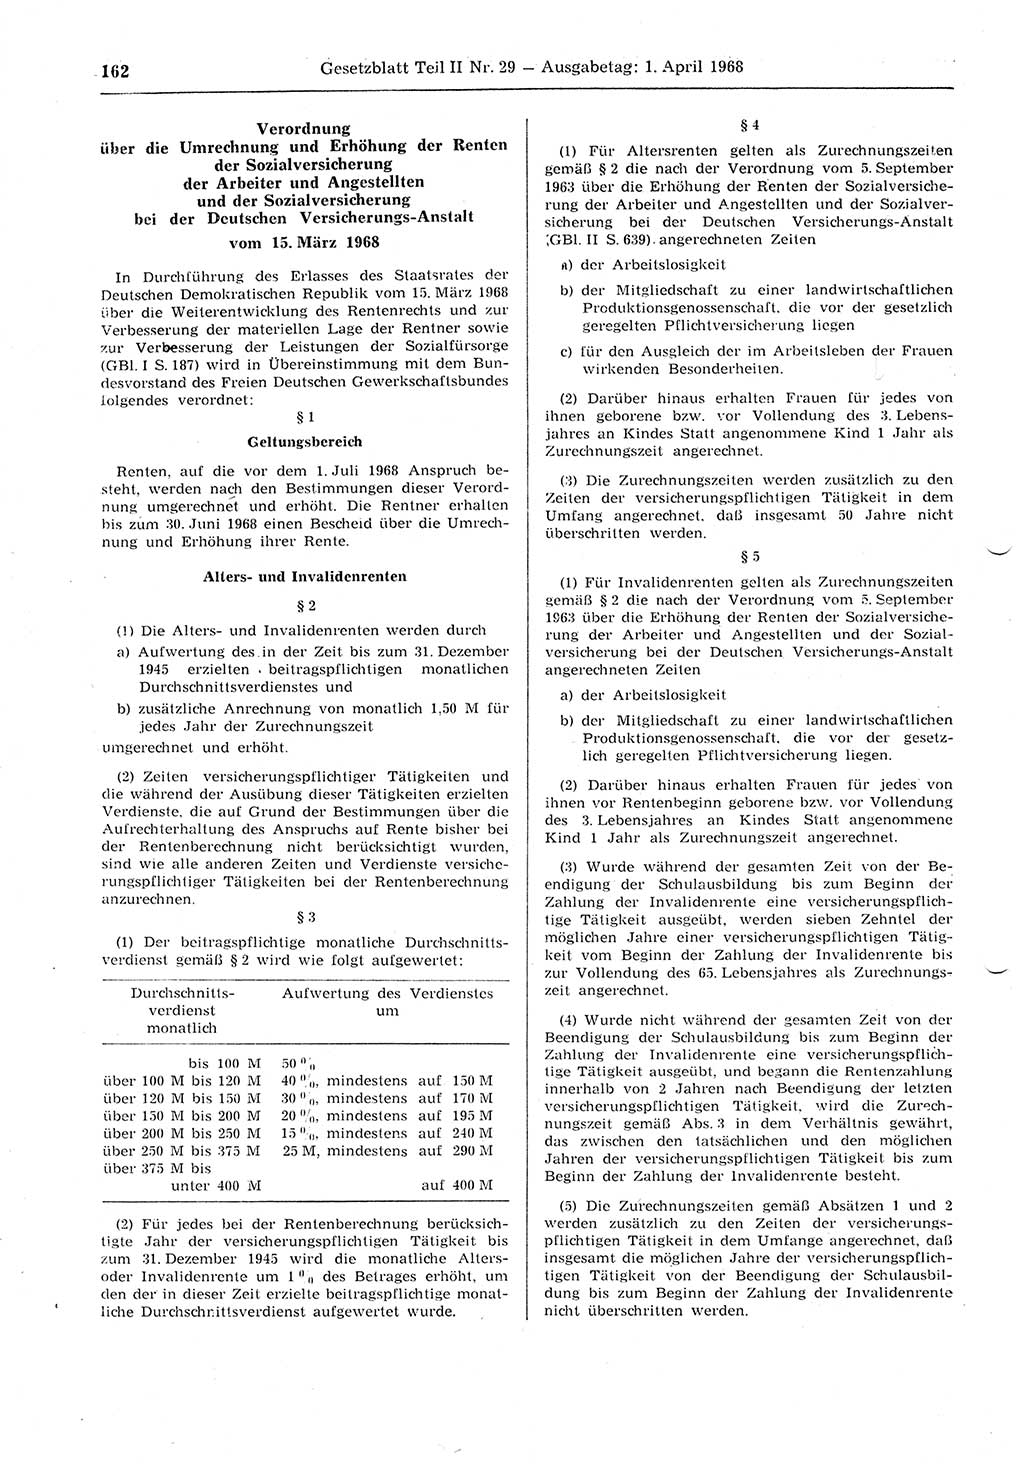 Gesetzblatt (GBl.) der Deutschen Demokratischen Republik (DDR) Teil ⅠⅠ 1968, Seite 162 (GBl. DDR ⅠⅠ 1968, S. 162)